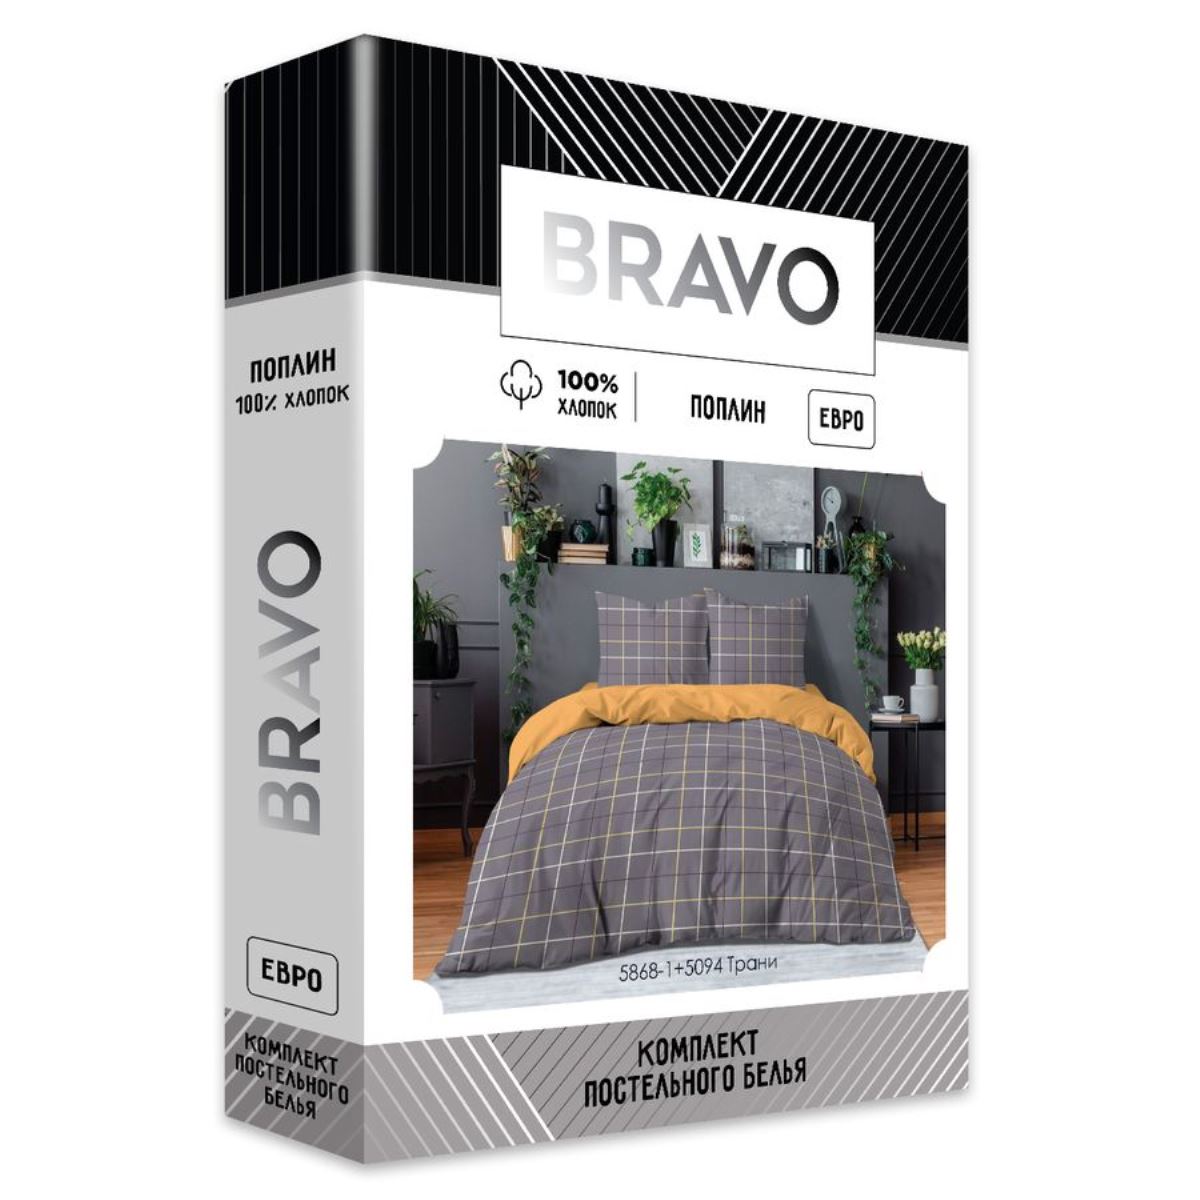 Комплект постельного белья Bravo Трани евро наволочки 70х70 см - фото 10